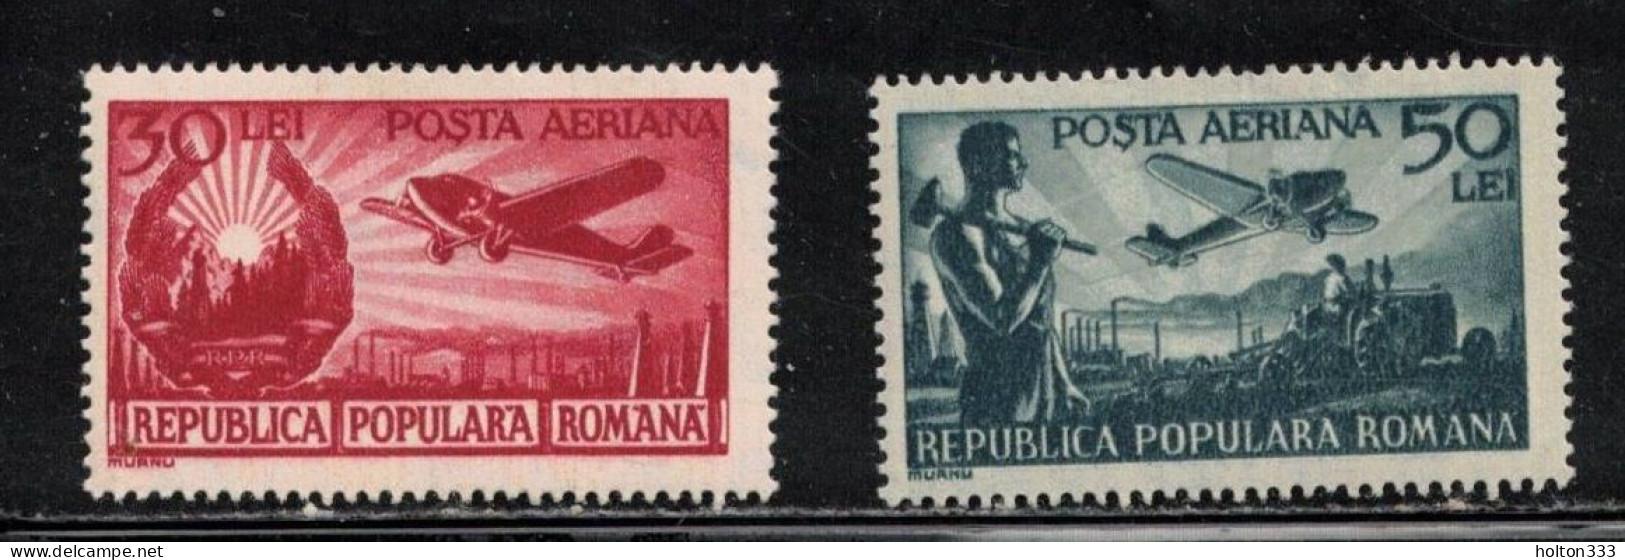 ROMANIA Scott # C32-3 MH - Airmail Issues - Nuevos